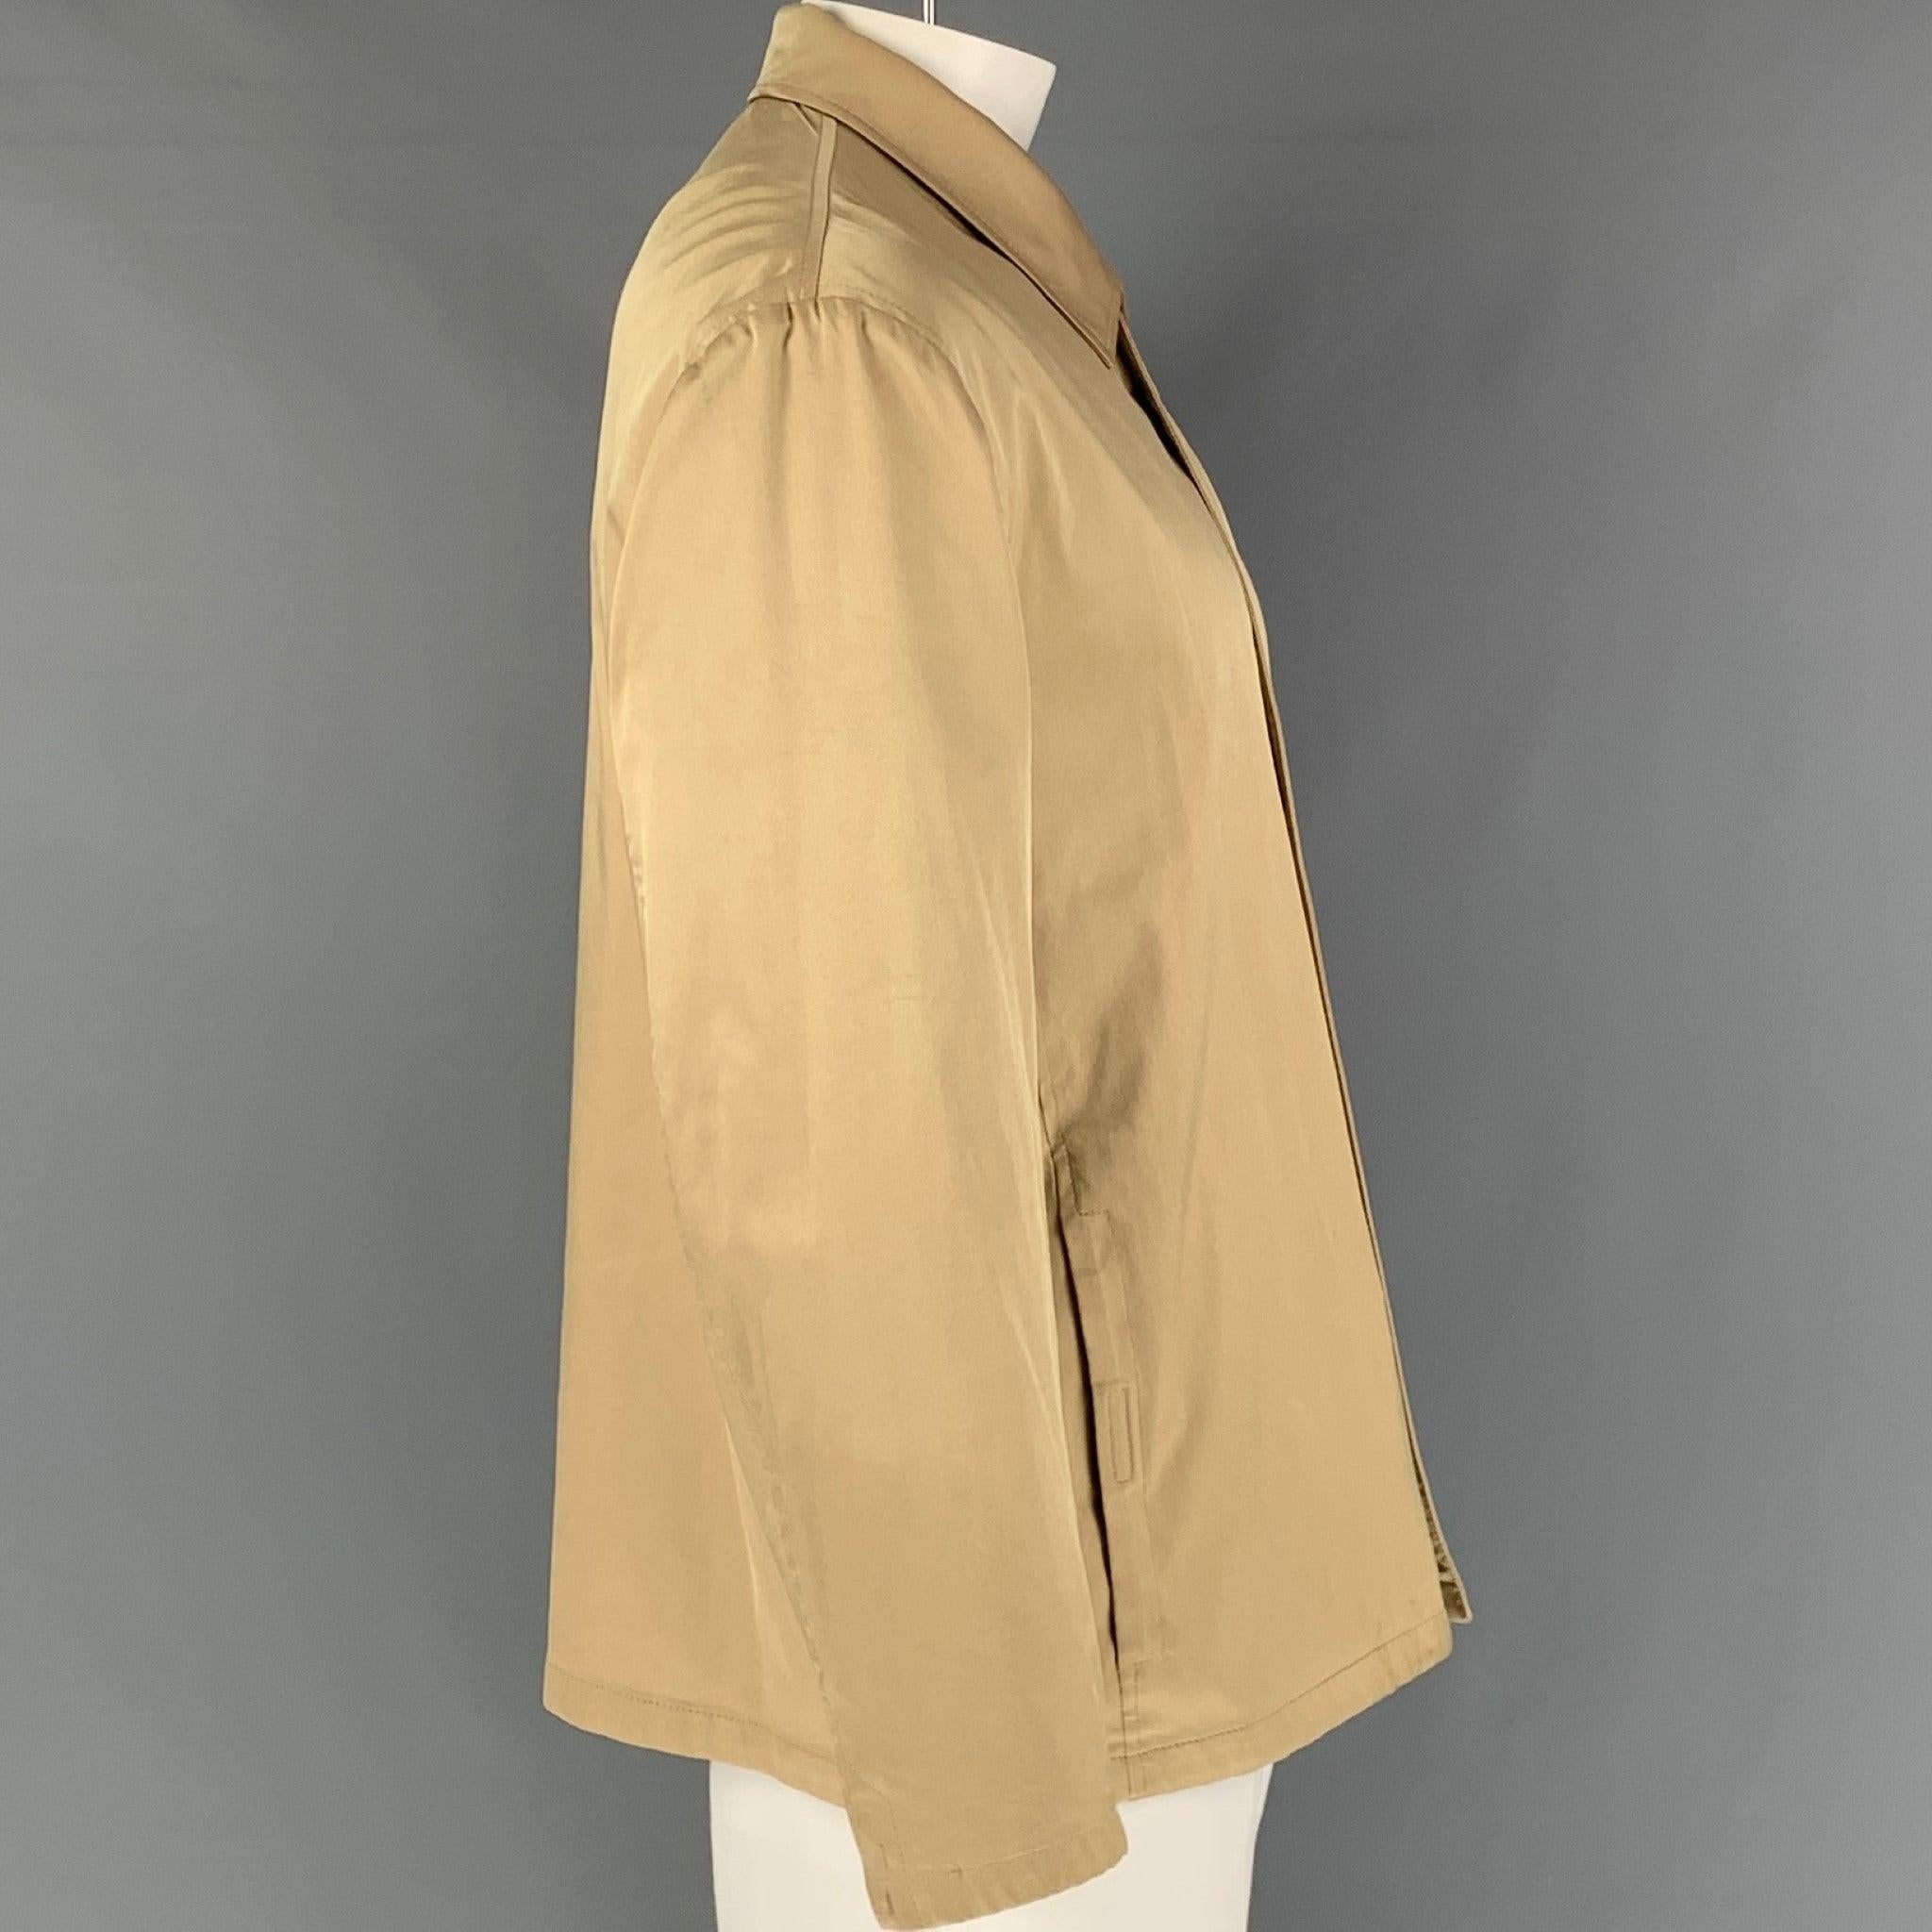 Ce manteau PRADA en soie mélangée beige est doté de poches frontales fendues et d'une fermeture à glissière. Fabriqué en Italie. Très bon état. Petites marques au col et aux manches. 

Marqué :   XL 

Mesures : 
 
Epaule : 21 pouces Poitrine : 52